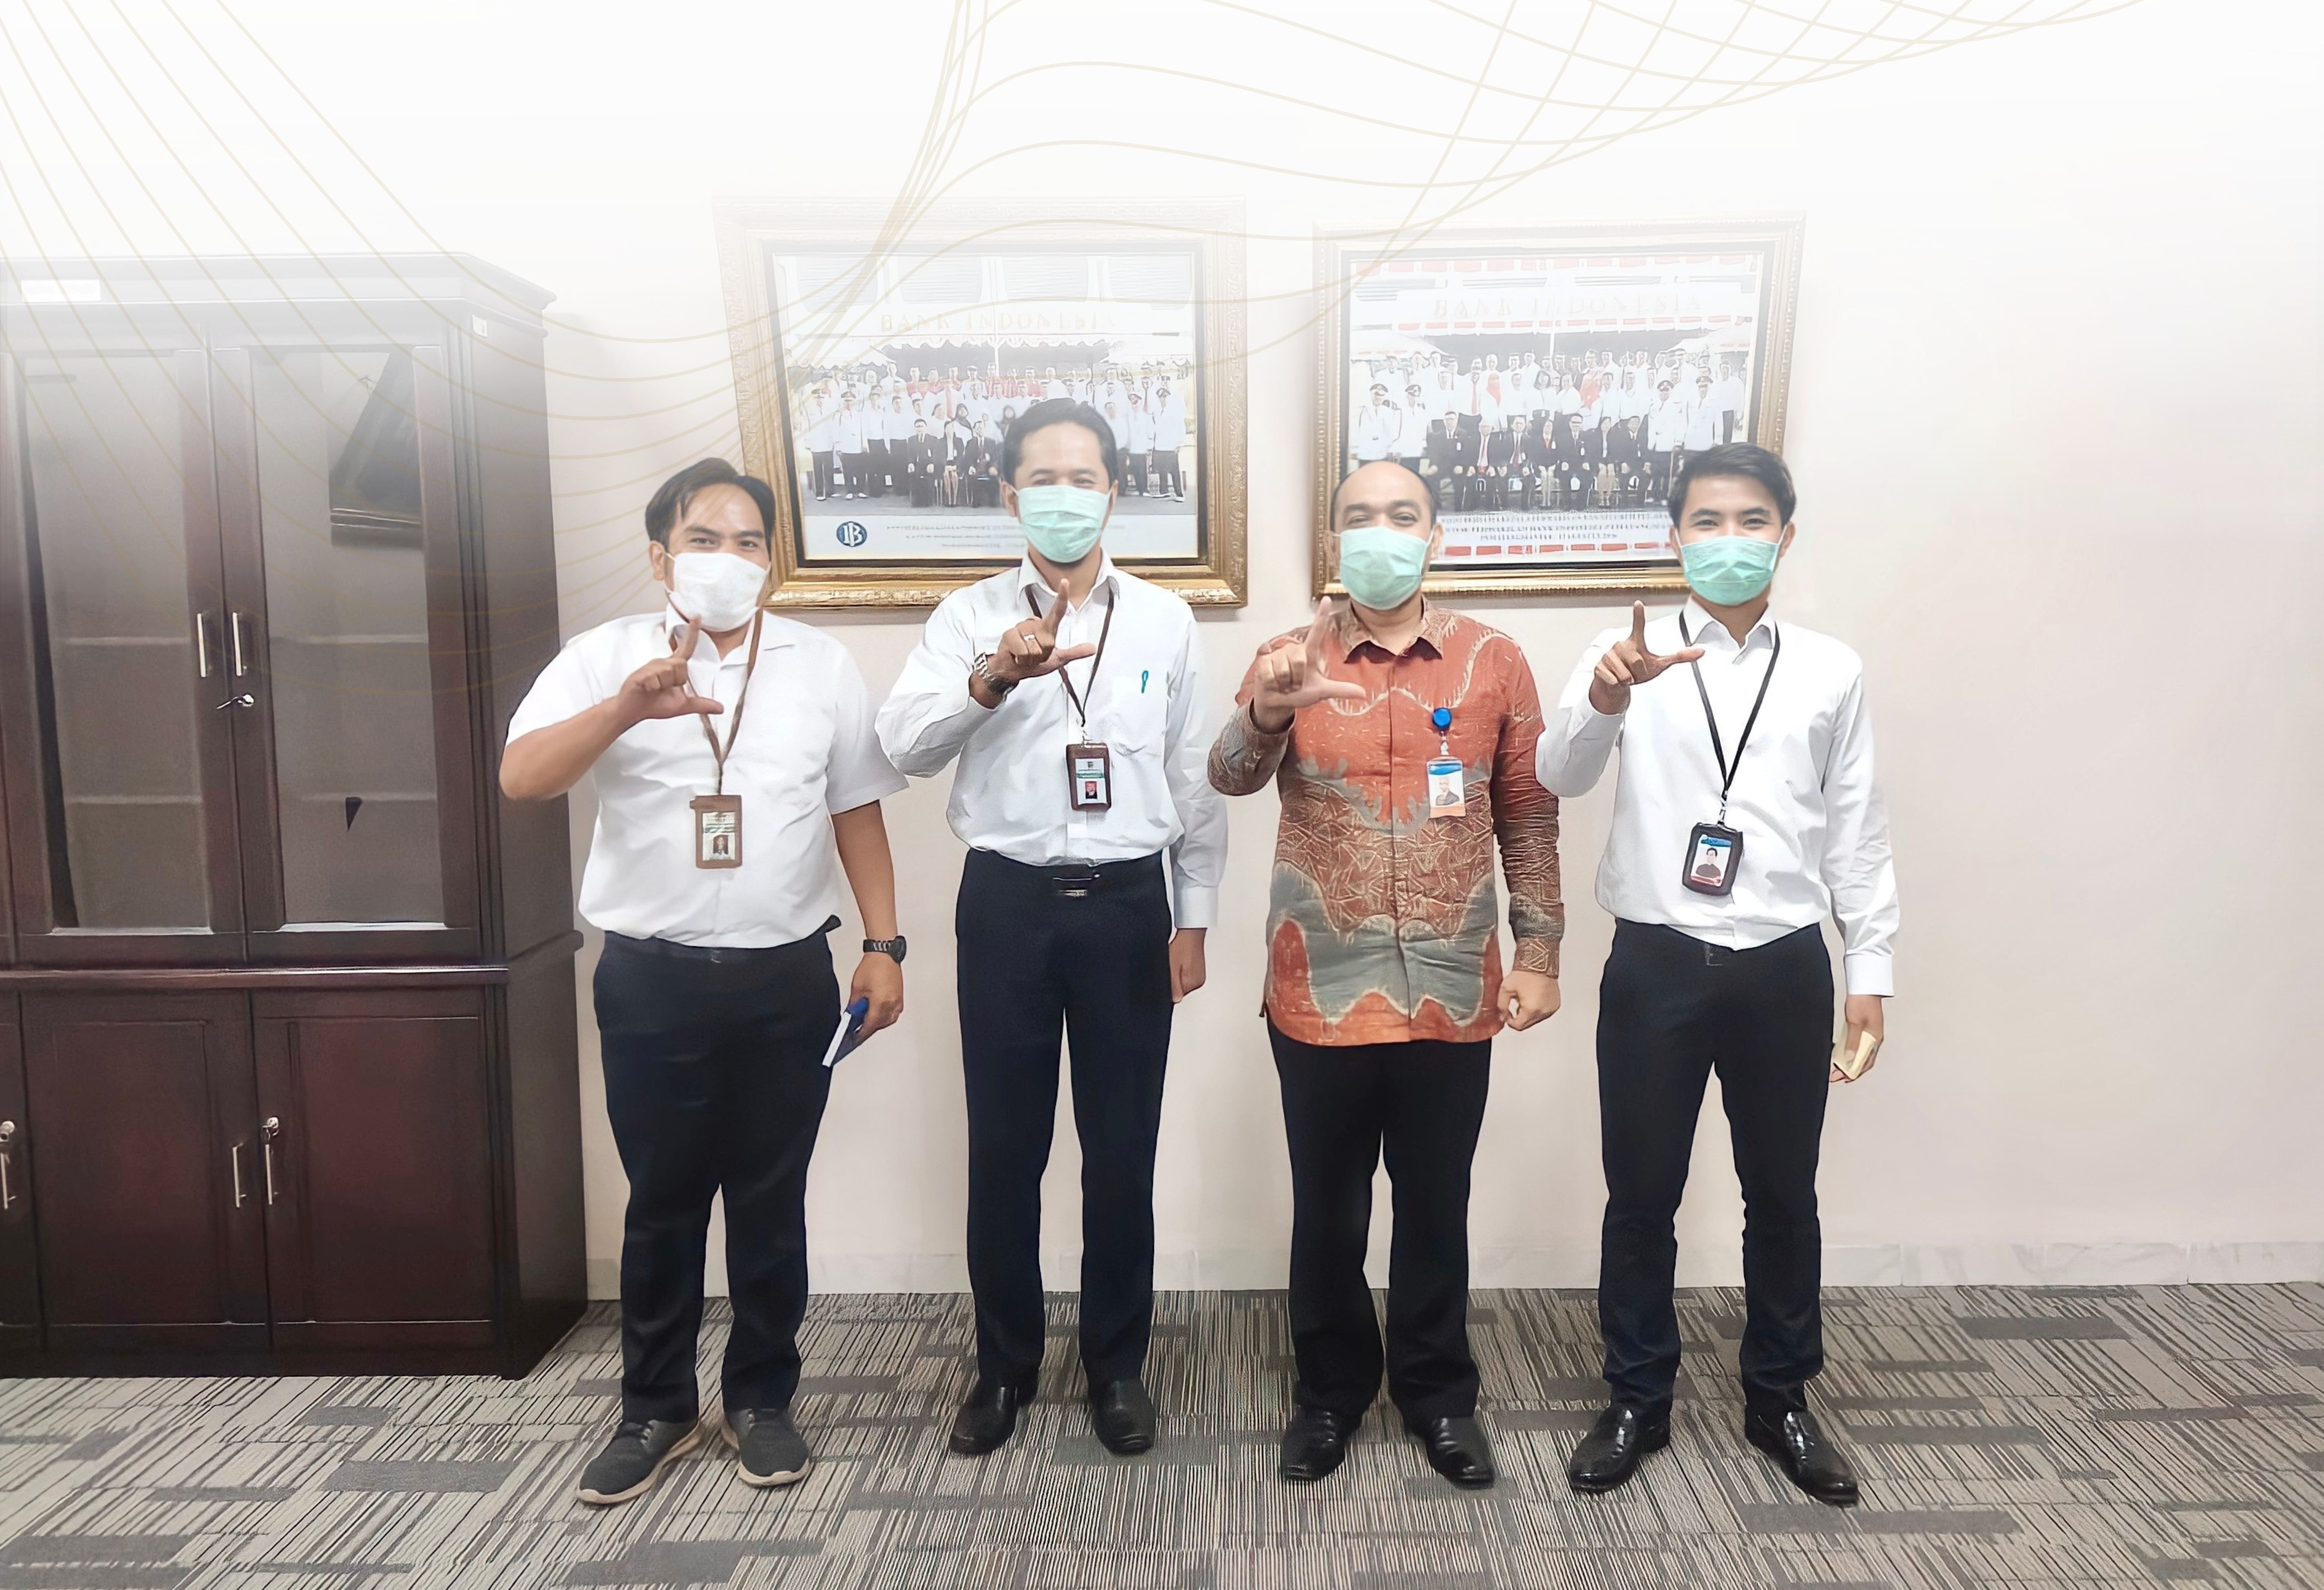 Lelang UMKM, Dukung Pemulihan Ekonomi Nasional bersama Kantor Perwakilan Bank Indonesia Kota Pematangsiantar